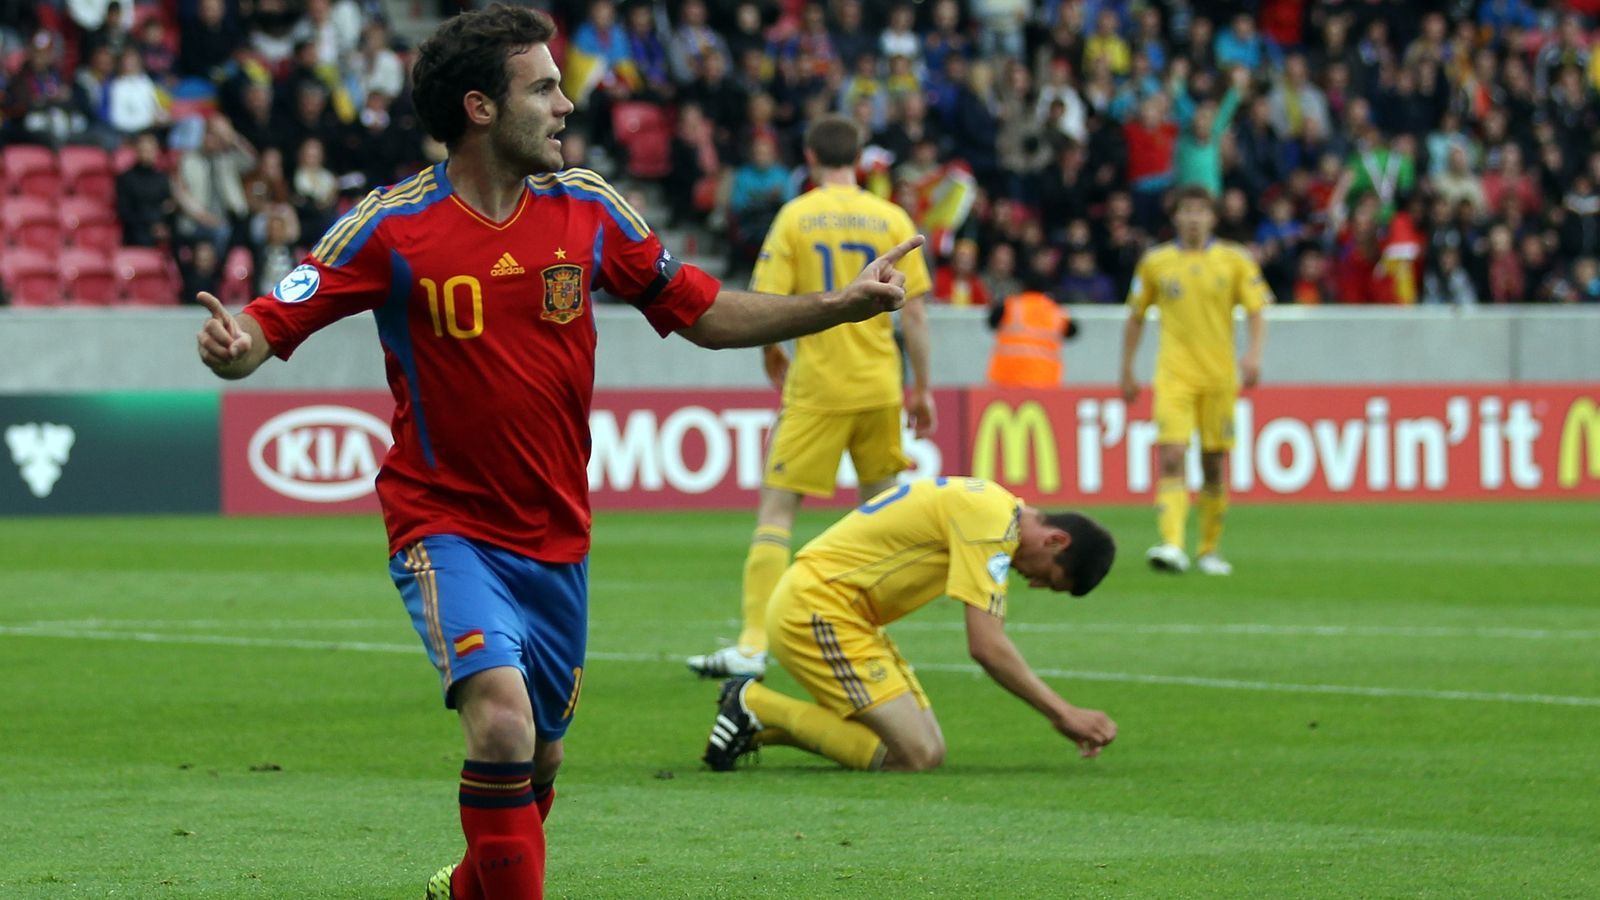 
                <strong>2011 - Juan Mata (Spanien)</strong><br>
                Nach dem WM-Titel der spanischen A-Nationalmannschaft im Jahr zuvor holte Spaniens Nachwuchs 2011 den U21-EM-Titel in Dänemark. Zunächst setzten sich die Iberer mit sieben Punkten als Erster in der Gruppenphase gegen Tschechien, England und die Ukraine durch. Beim 3:0-Sieg über die Ukrainer gelangen Juan Mata zwei Treffer - seine einzigen bei der U21-EM 2011. Der damals 23-Jährige war schon sehr erfahren für sein Alter, gehörte er doch zur Weltmeister-Mannschaft von 2010. Mata führte Spaniens Nachwuchsteam 2011 bis ins Finale gegen die Schweiz, wo die "Seleccion" dann souverän mit 2:0 gewann. Heute spielt der 32-Jährige für Manchester United, war zuvor beim FC Chelsea.
              